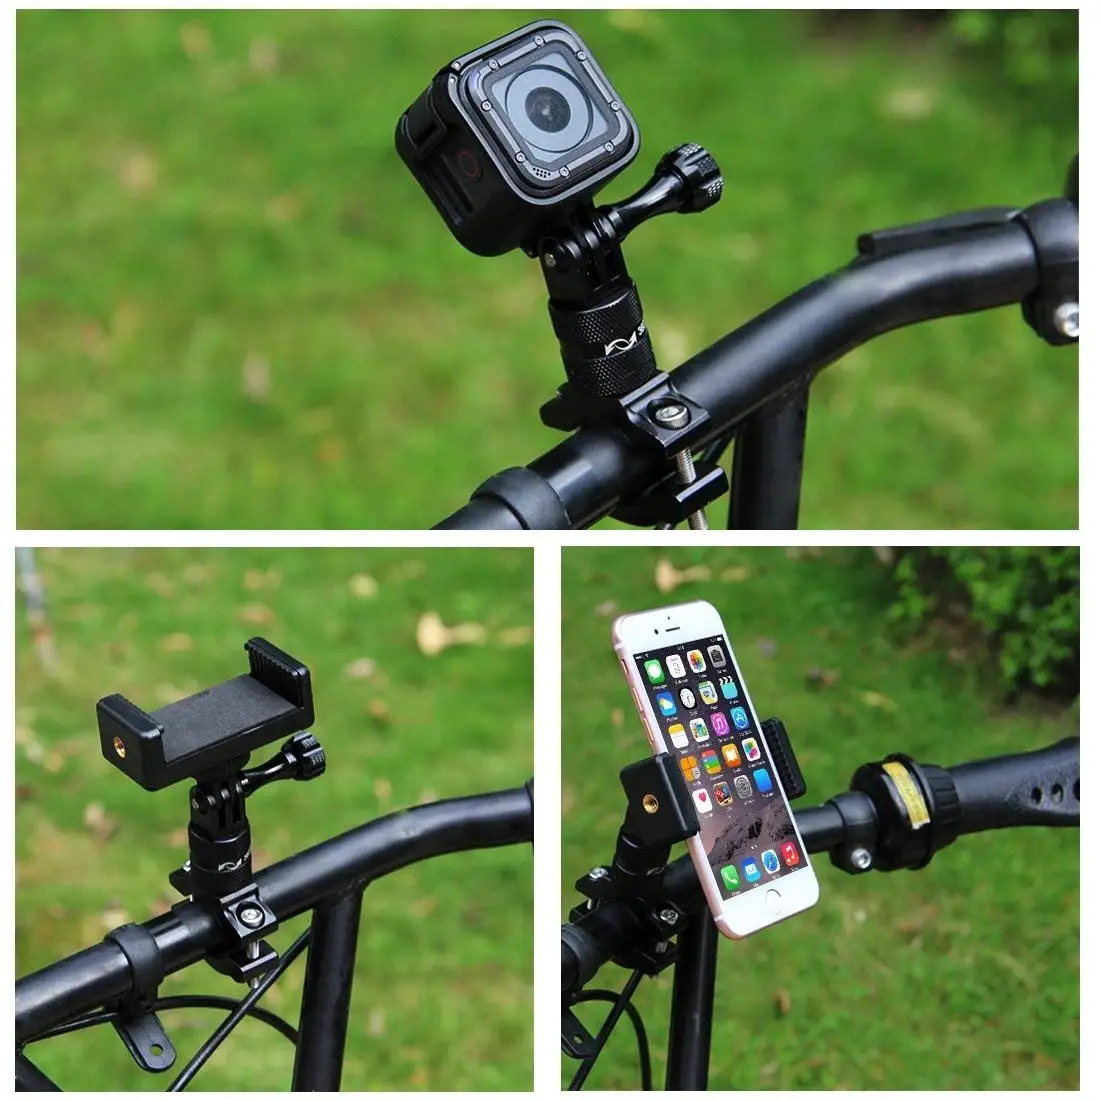 PULUZ 360 градусов вращения Алюминий велосипедный адаптер для руля крепление с винтом для GoPro HERO6/5/4/3+/3/2/1 Session5/4, Xi